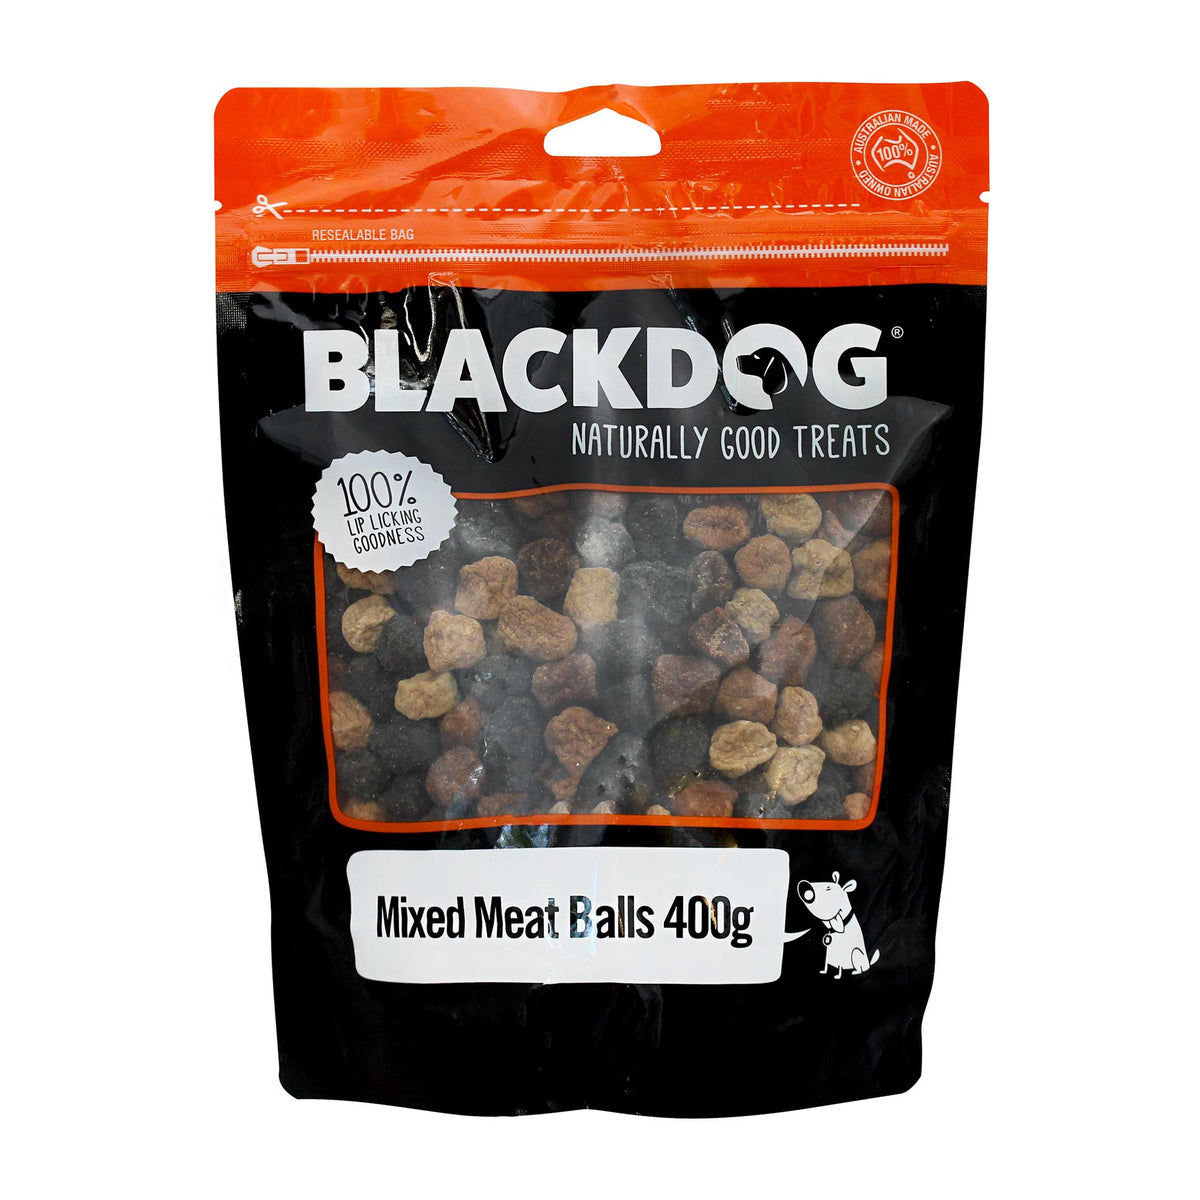 Blackdog Mixed Meat Balls 400g